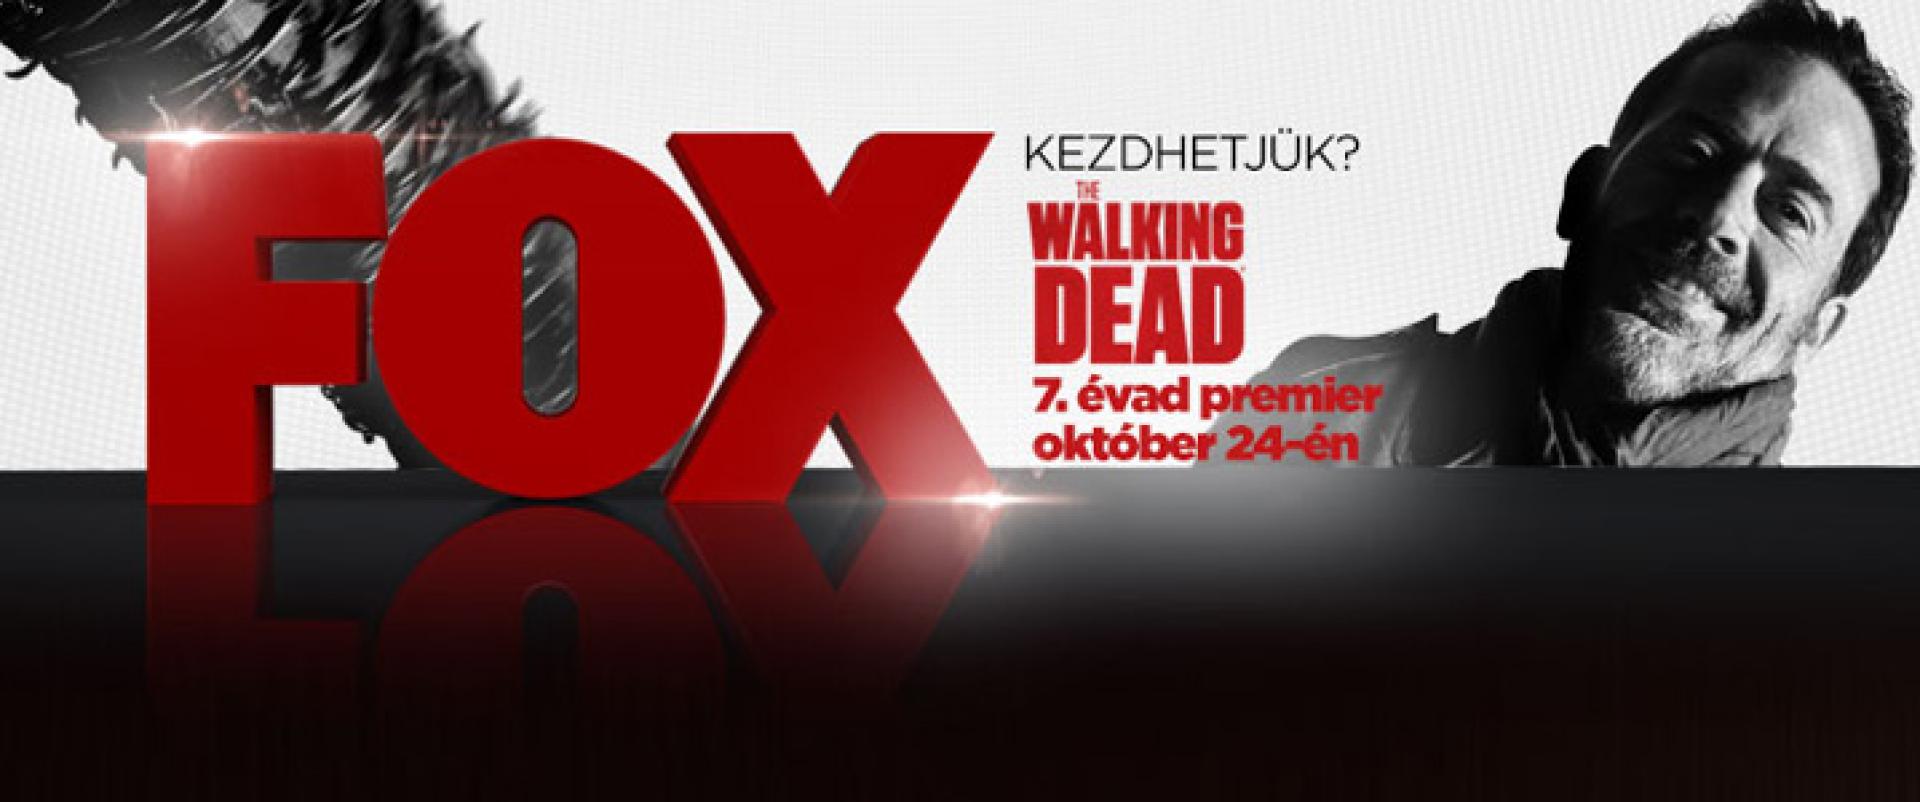 The Walking Dead 7x01